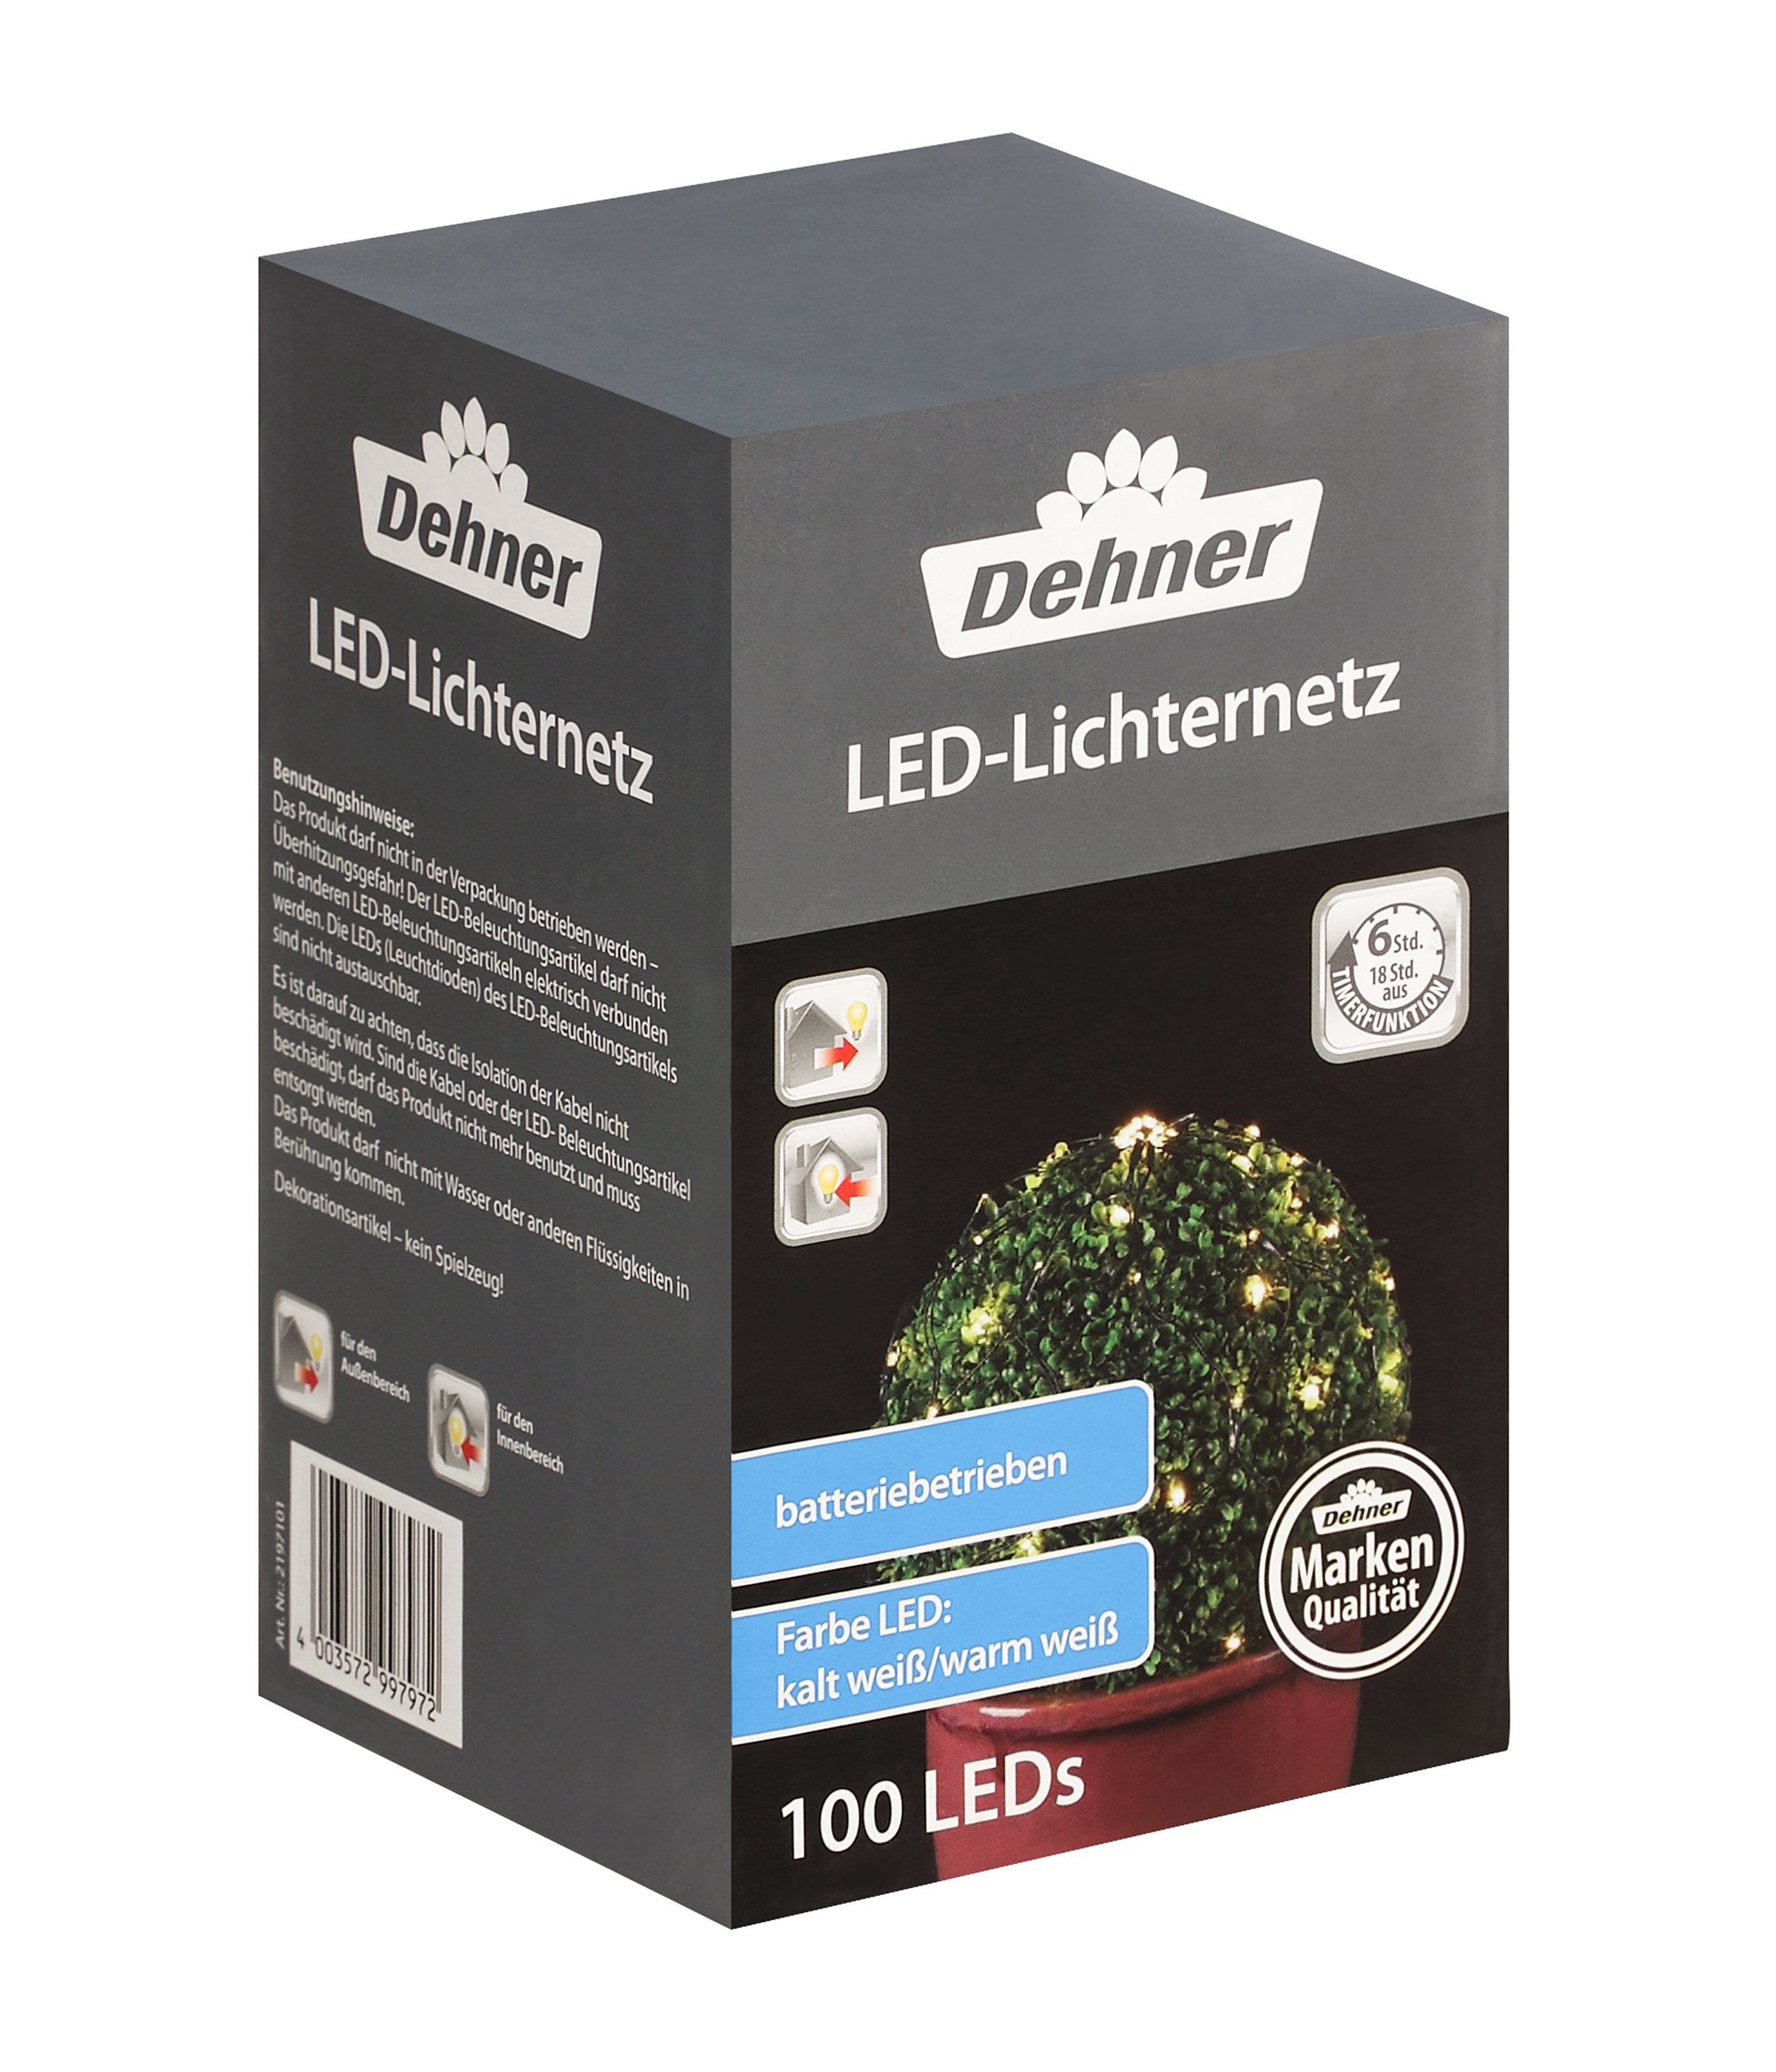 Dehner LED-Lichterkette LED Lichterkette, 100 LEDs, kaltweiß/warmweiß, Lichternetz mit Farbwechselfunktion und Timer, für Indoor/Outdoor